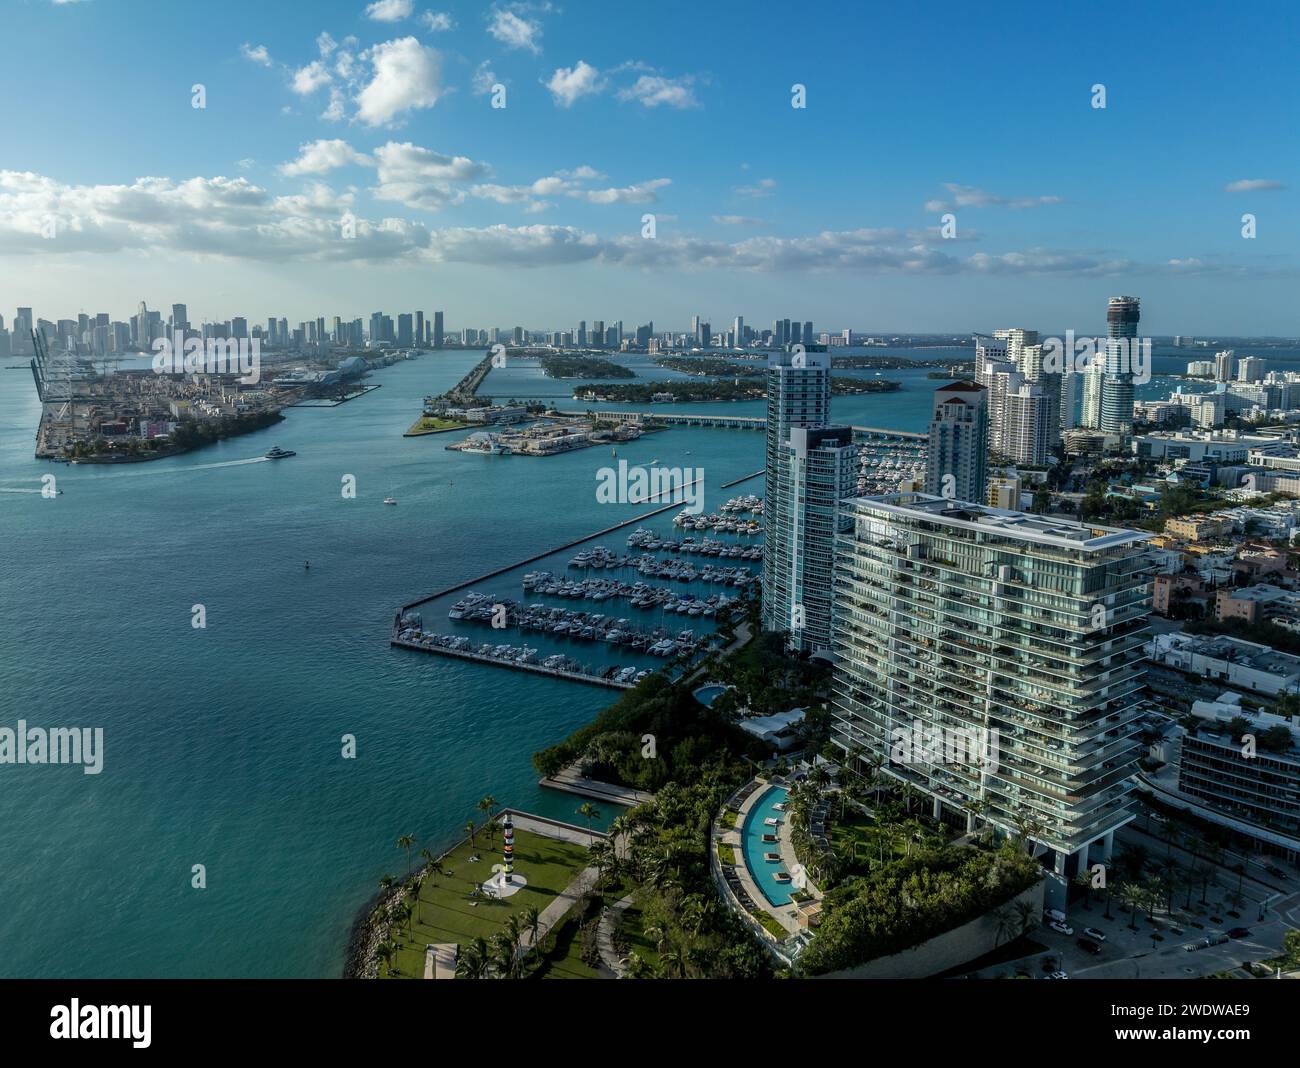 Blick aus der Vogelperspektive auf den South Pointe Park in Miami mit luxuriösen Wohnungstürmen, Sandstrand, Government Cut Waterway, um Kreuzfahrtschiffverkehr zu transportieren Stockfoto